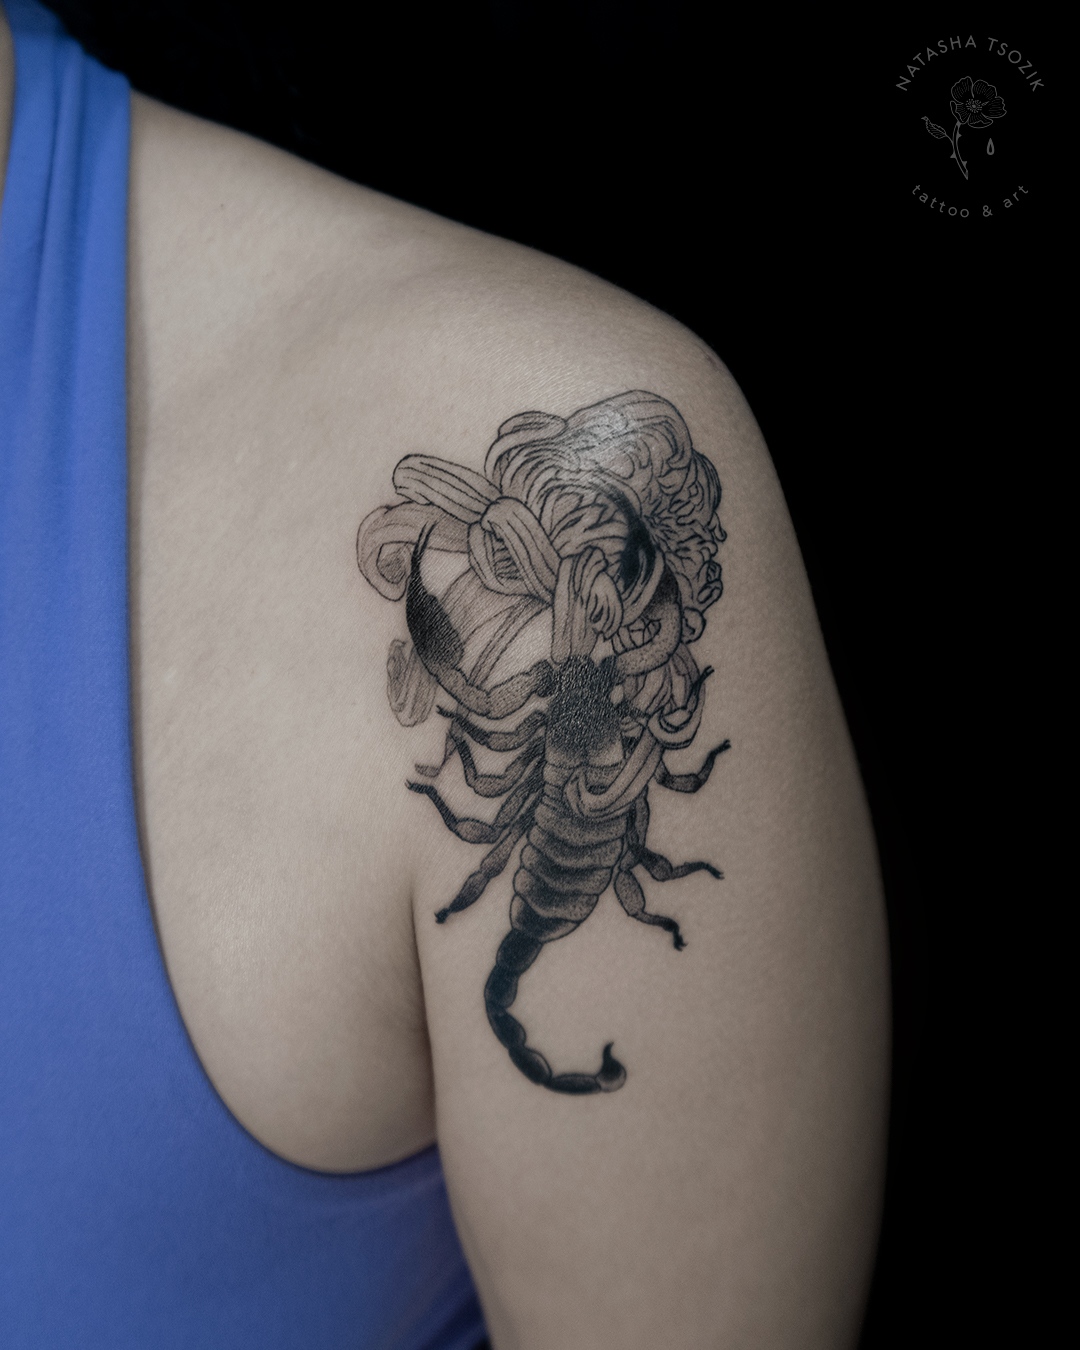 A chrysanthemum scorpio tattoo